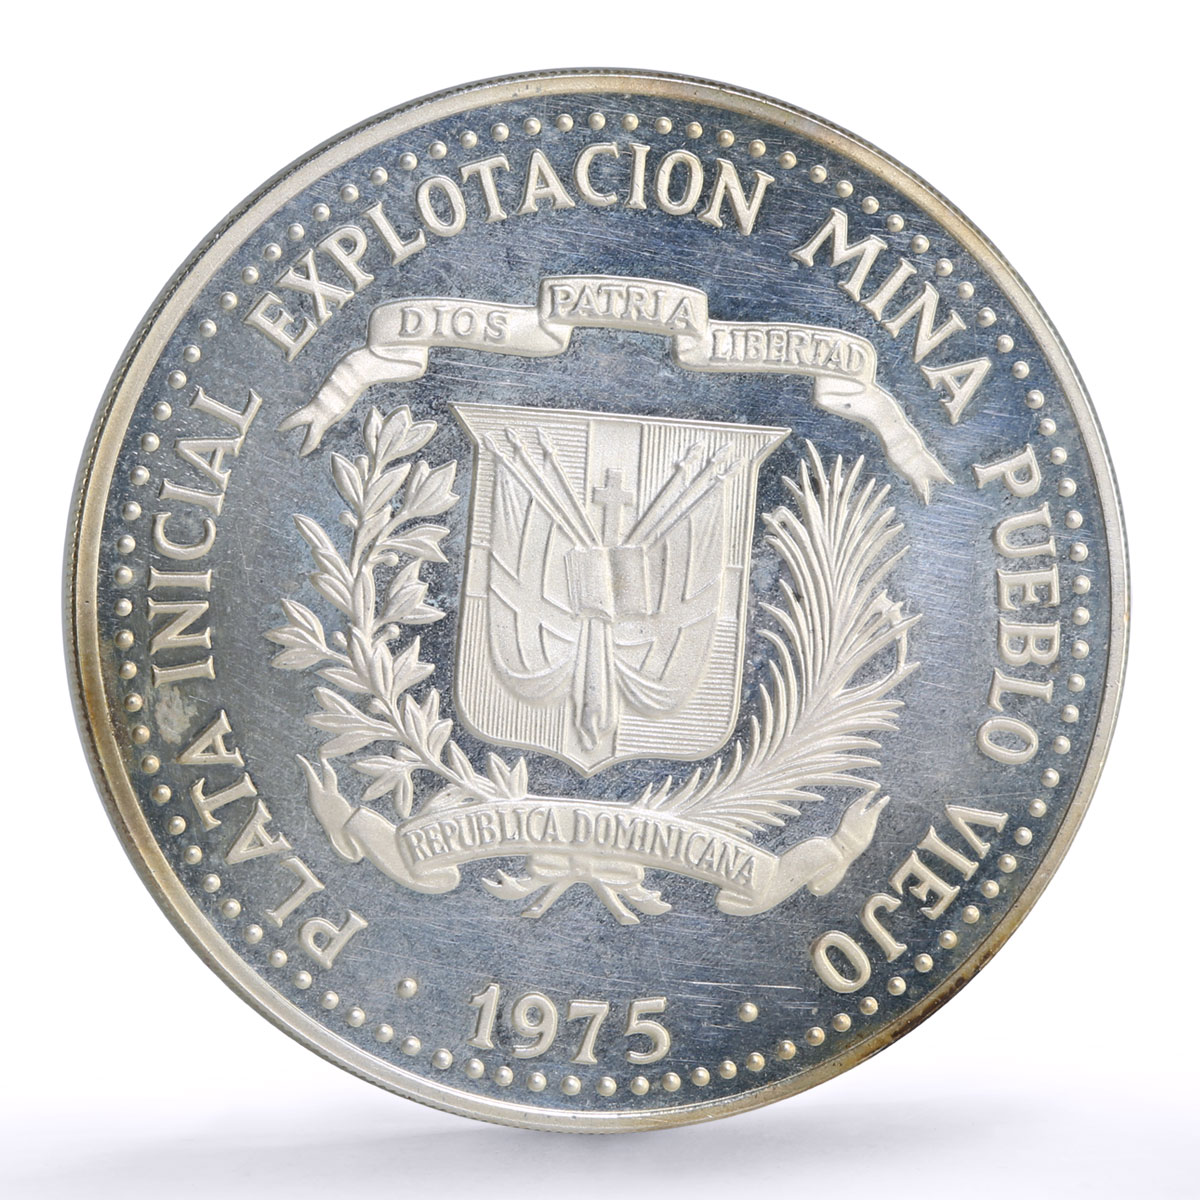 Dominican Republic 10 pesos Pueblo Viejo Mine Taino Sculpture Art Ag coin 1975